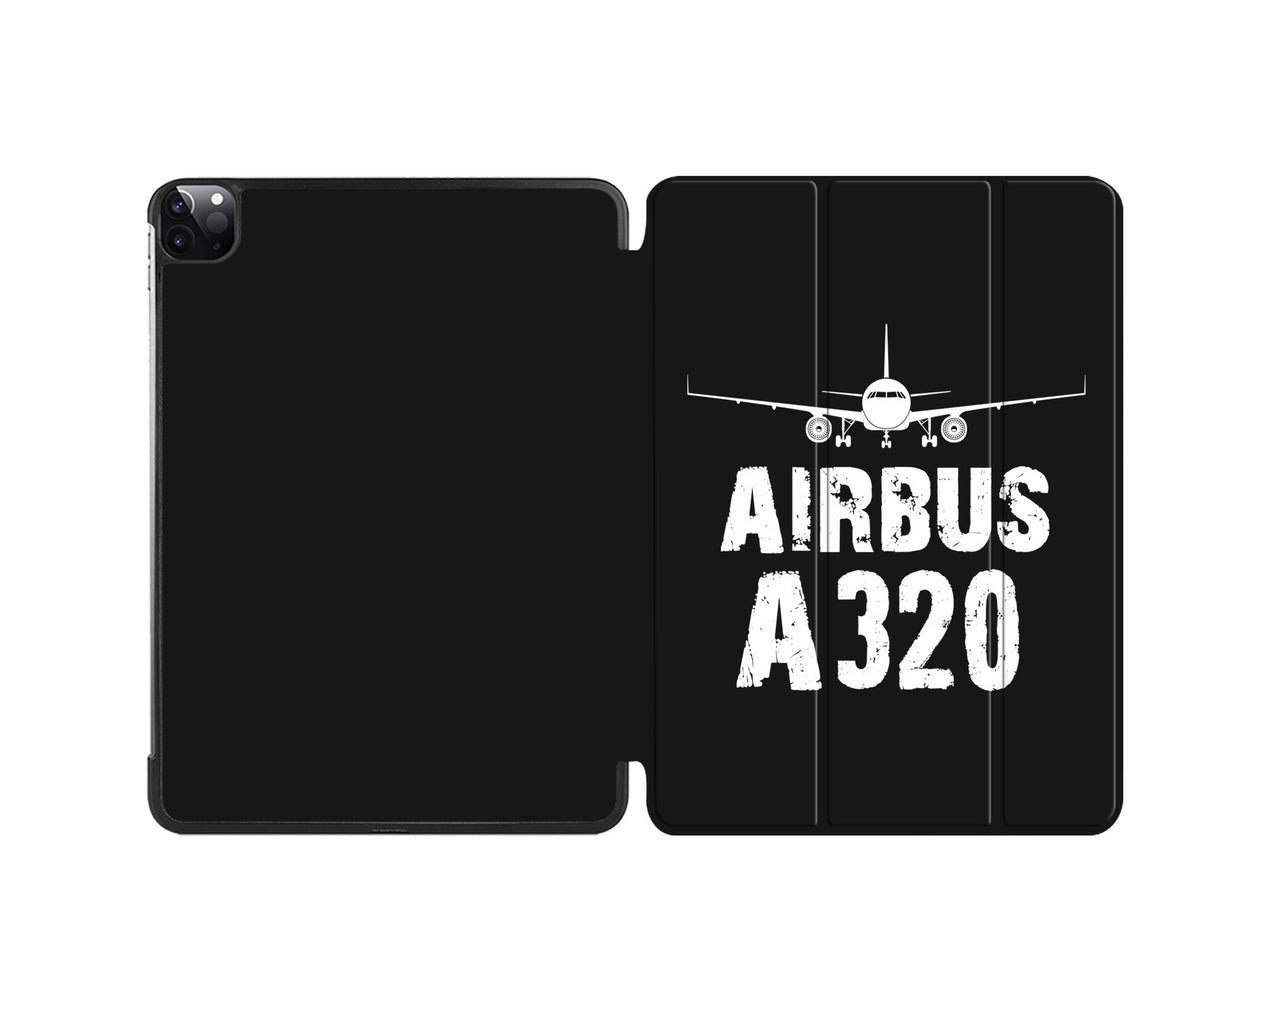 Airbus A320 & Plane Designed iPad Cases